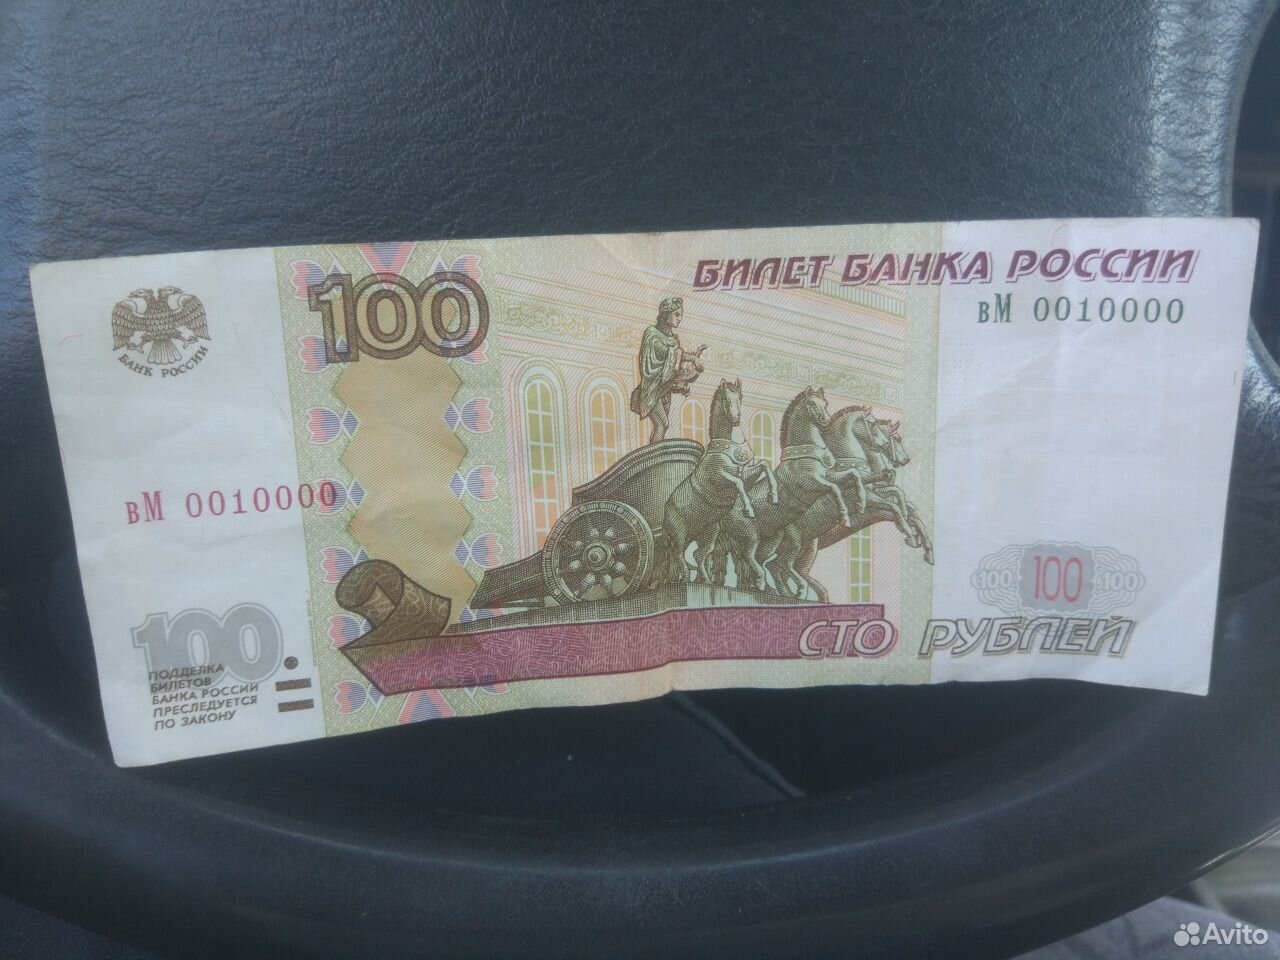 16 500 в рублях